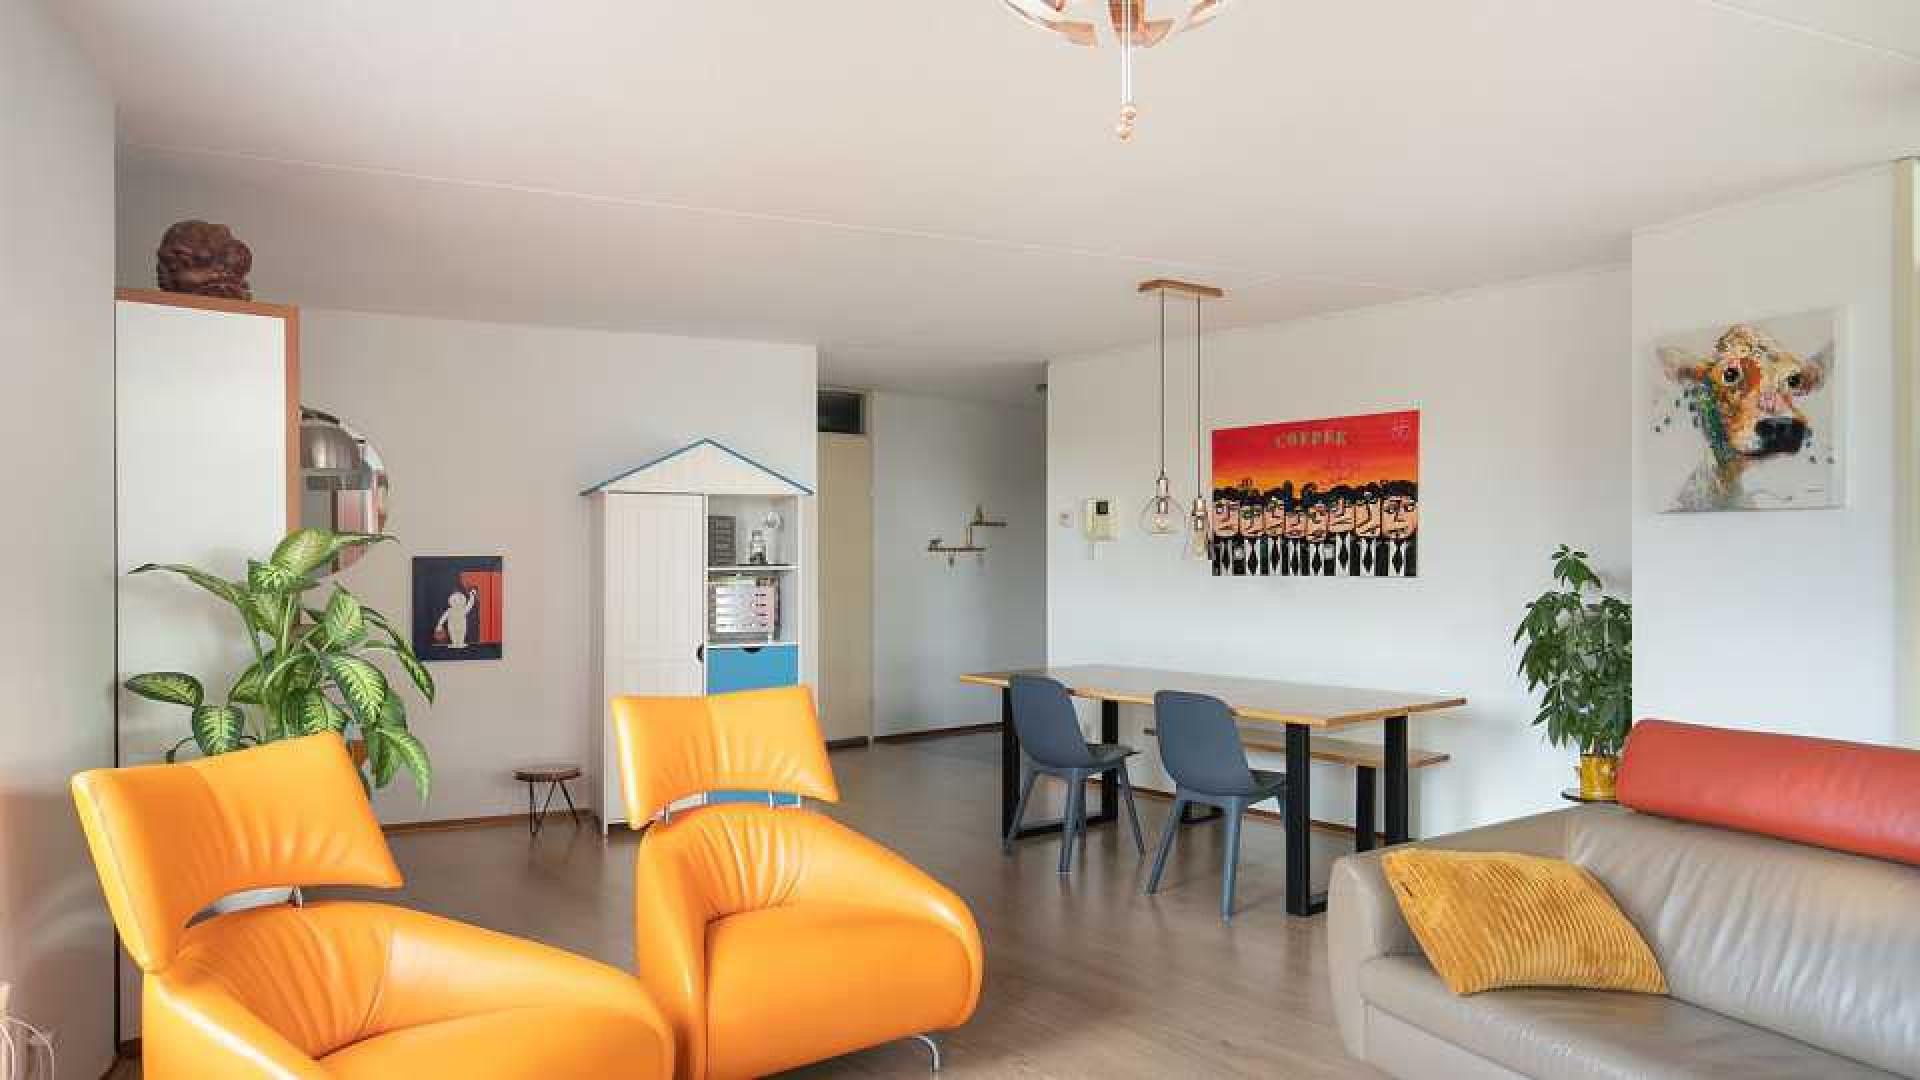 Memphis Depay koopt appartement in PSV stad Eindhoven. Zie foto's 4